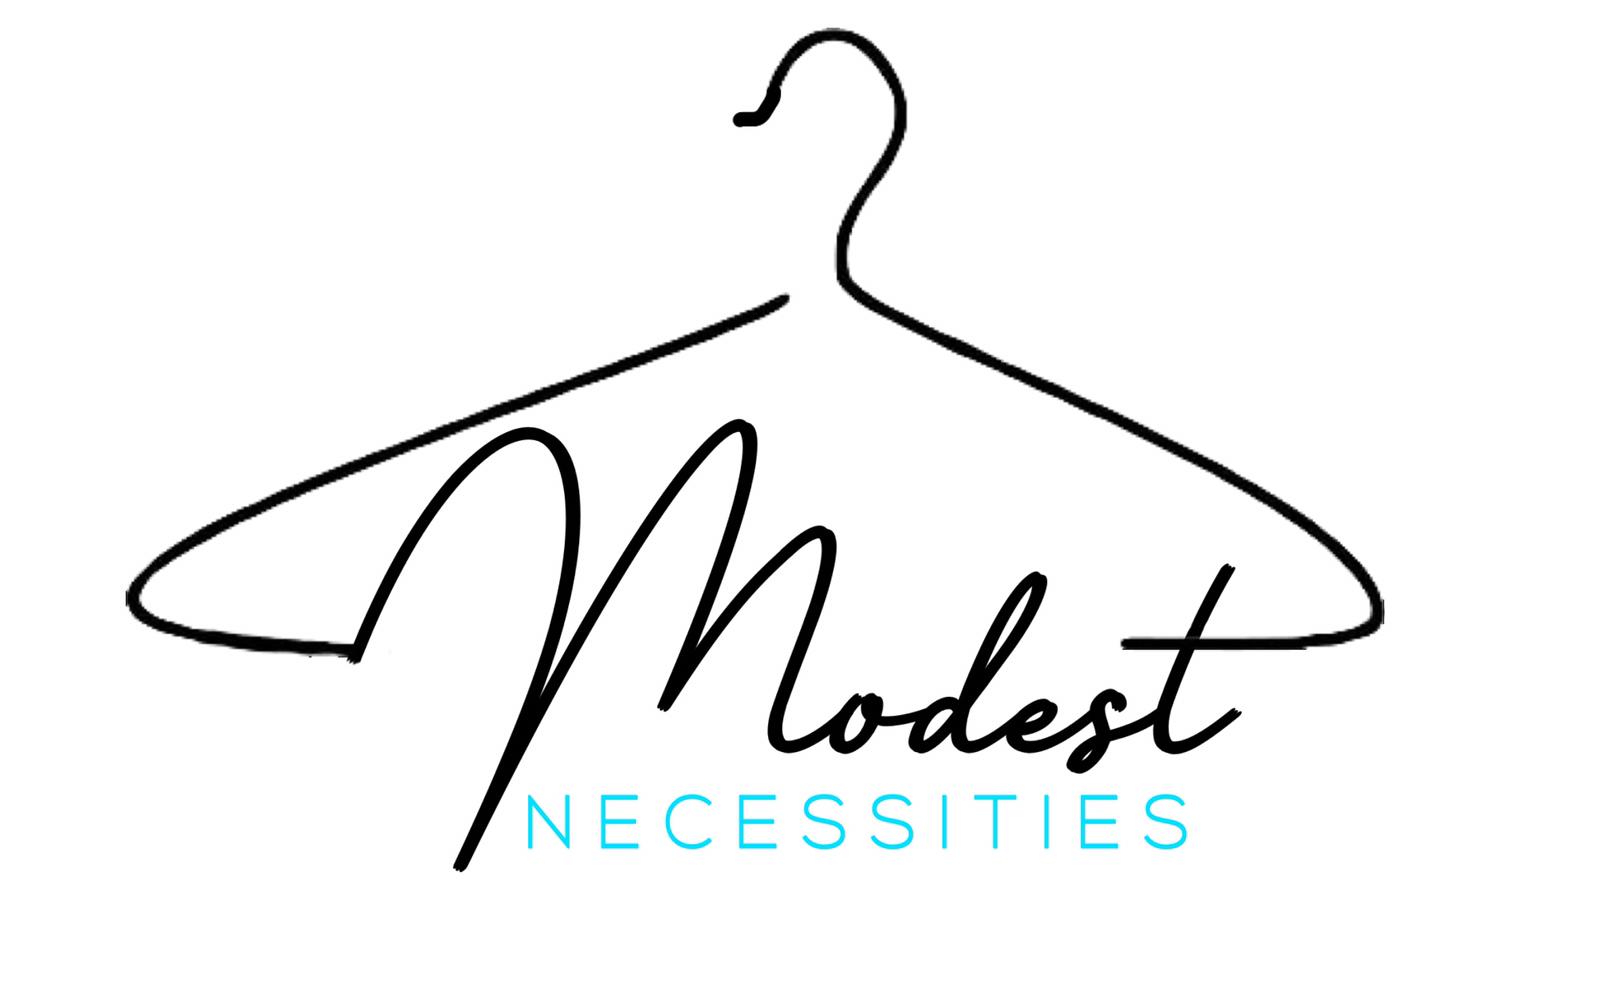 Modest Necessities